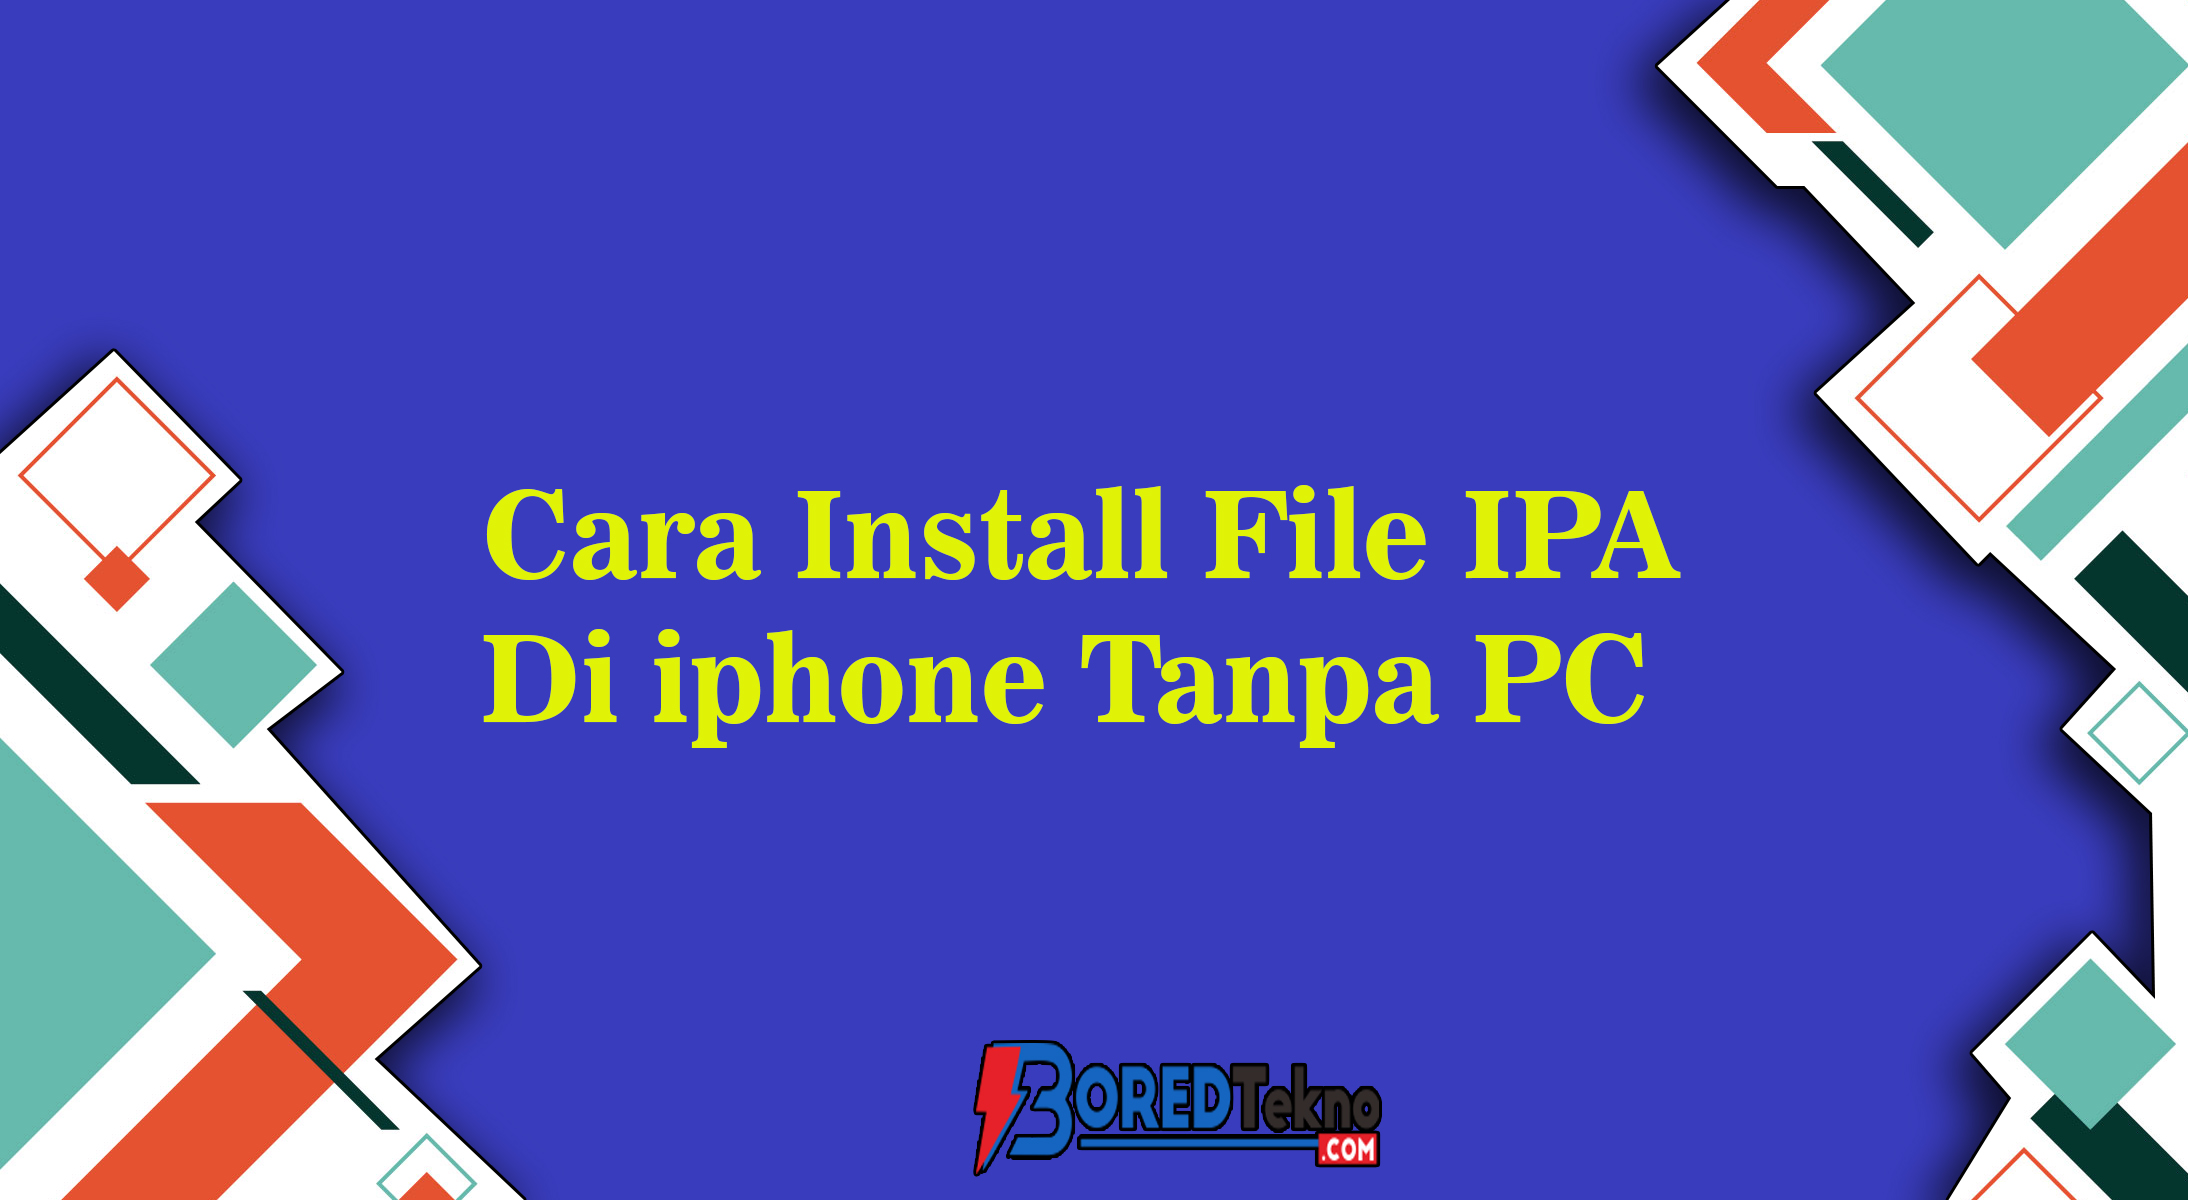 Cara Install File IPA Di iphone Tanpa PC